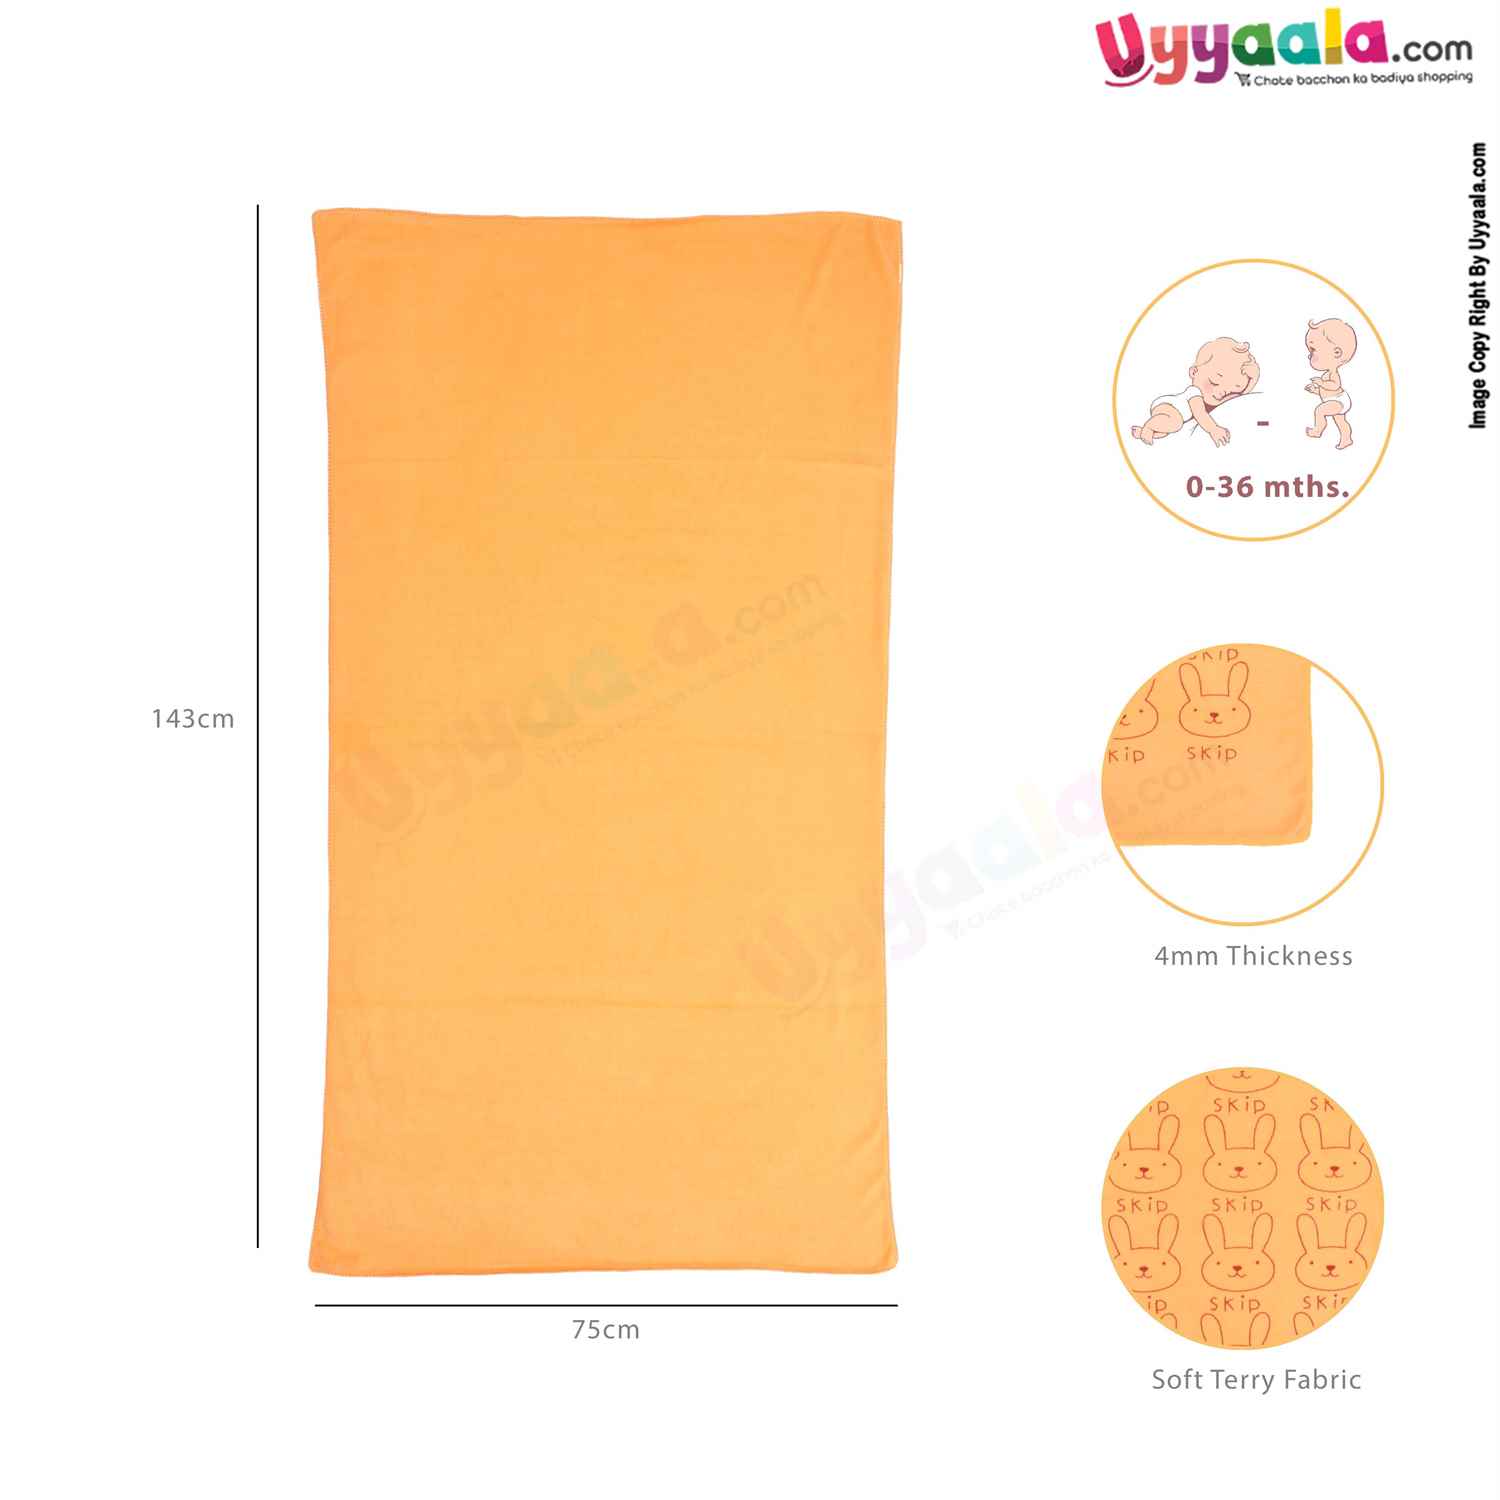 Soft Terry Bath Towel Premium with Rabbit Print for Babies 0-36m Age, Size (143*75cm)- Orange